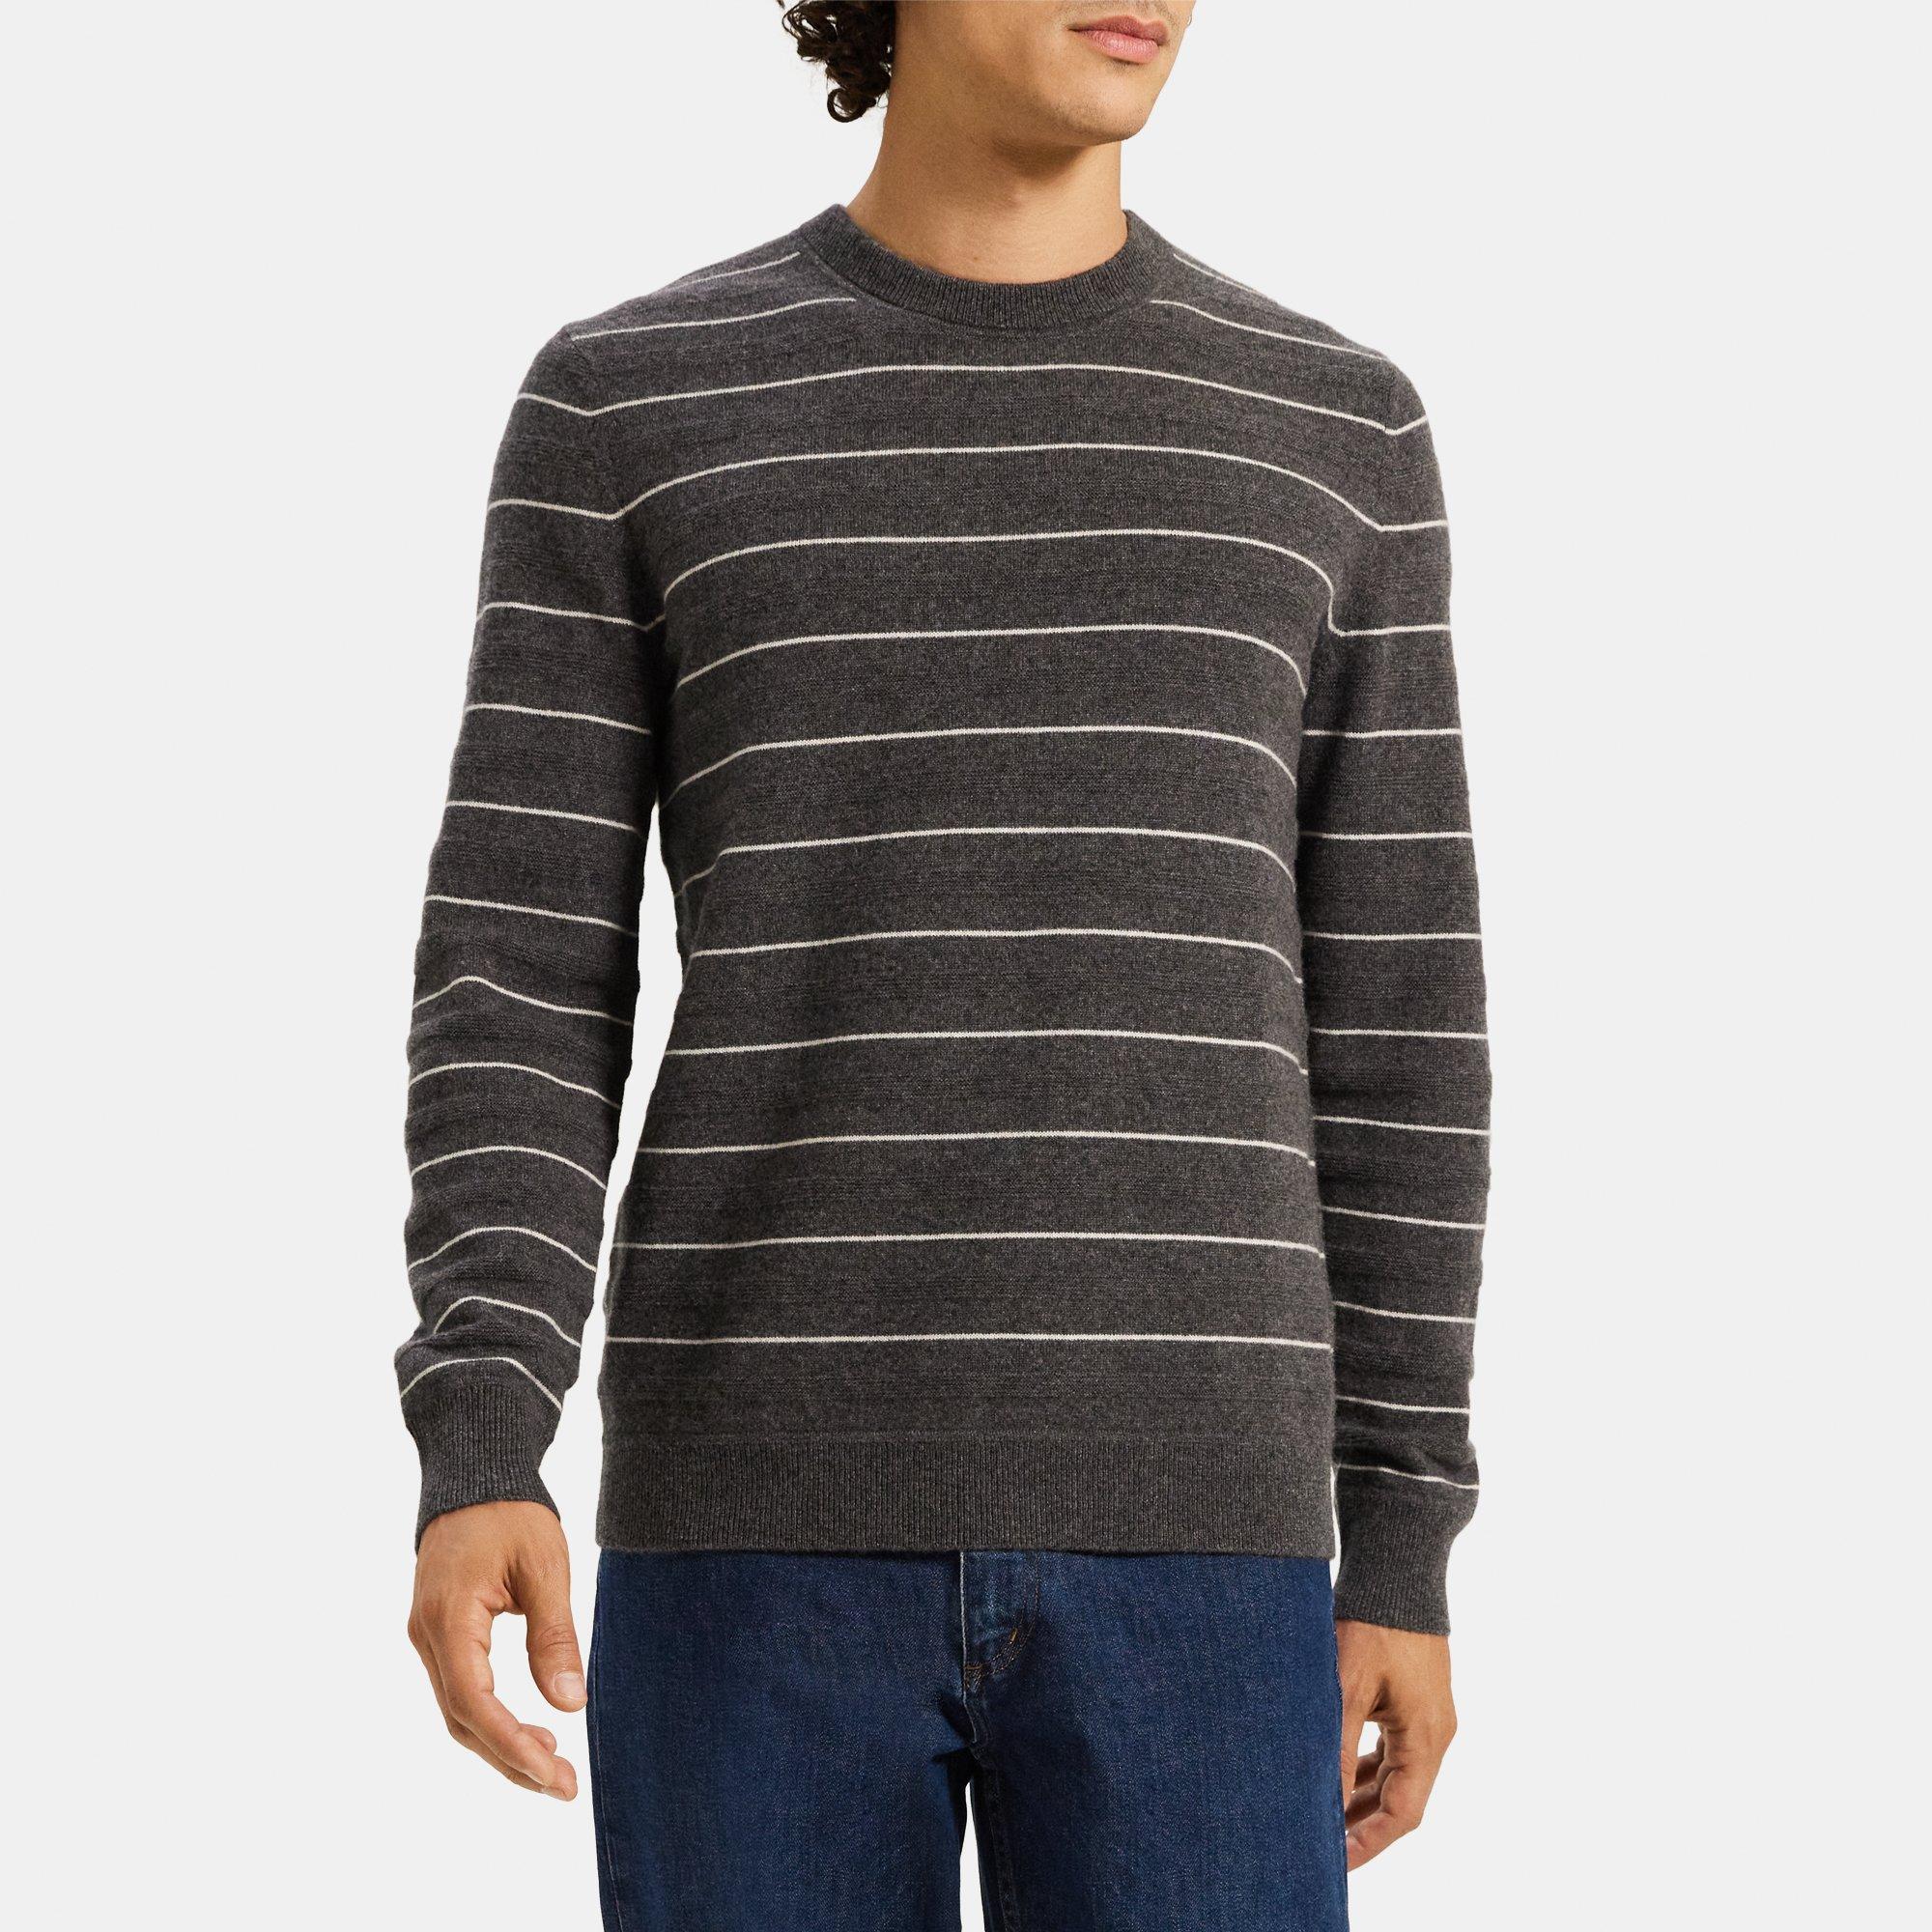 띠어리 스웨터 Theory Crewneck Sweater in Striped Cashmere,CHARCOAL MULTI